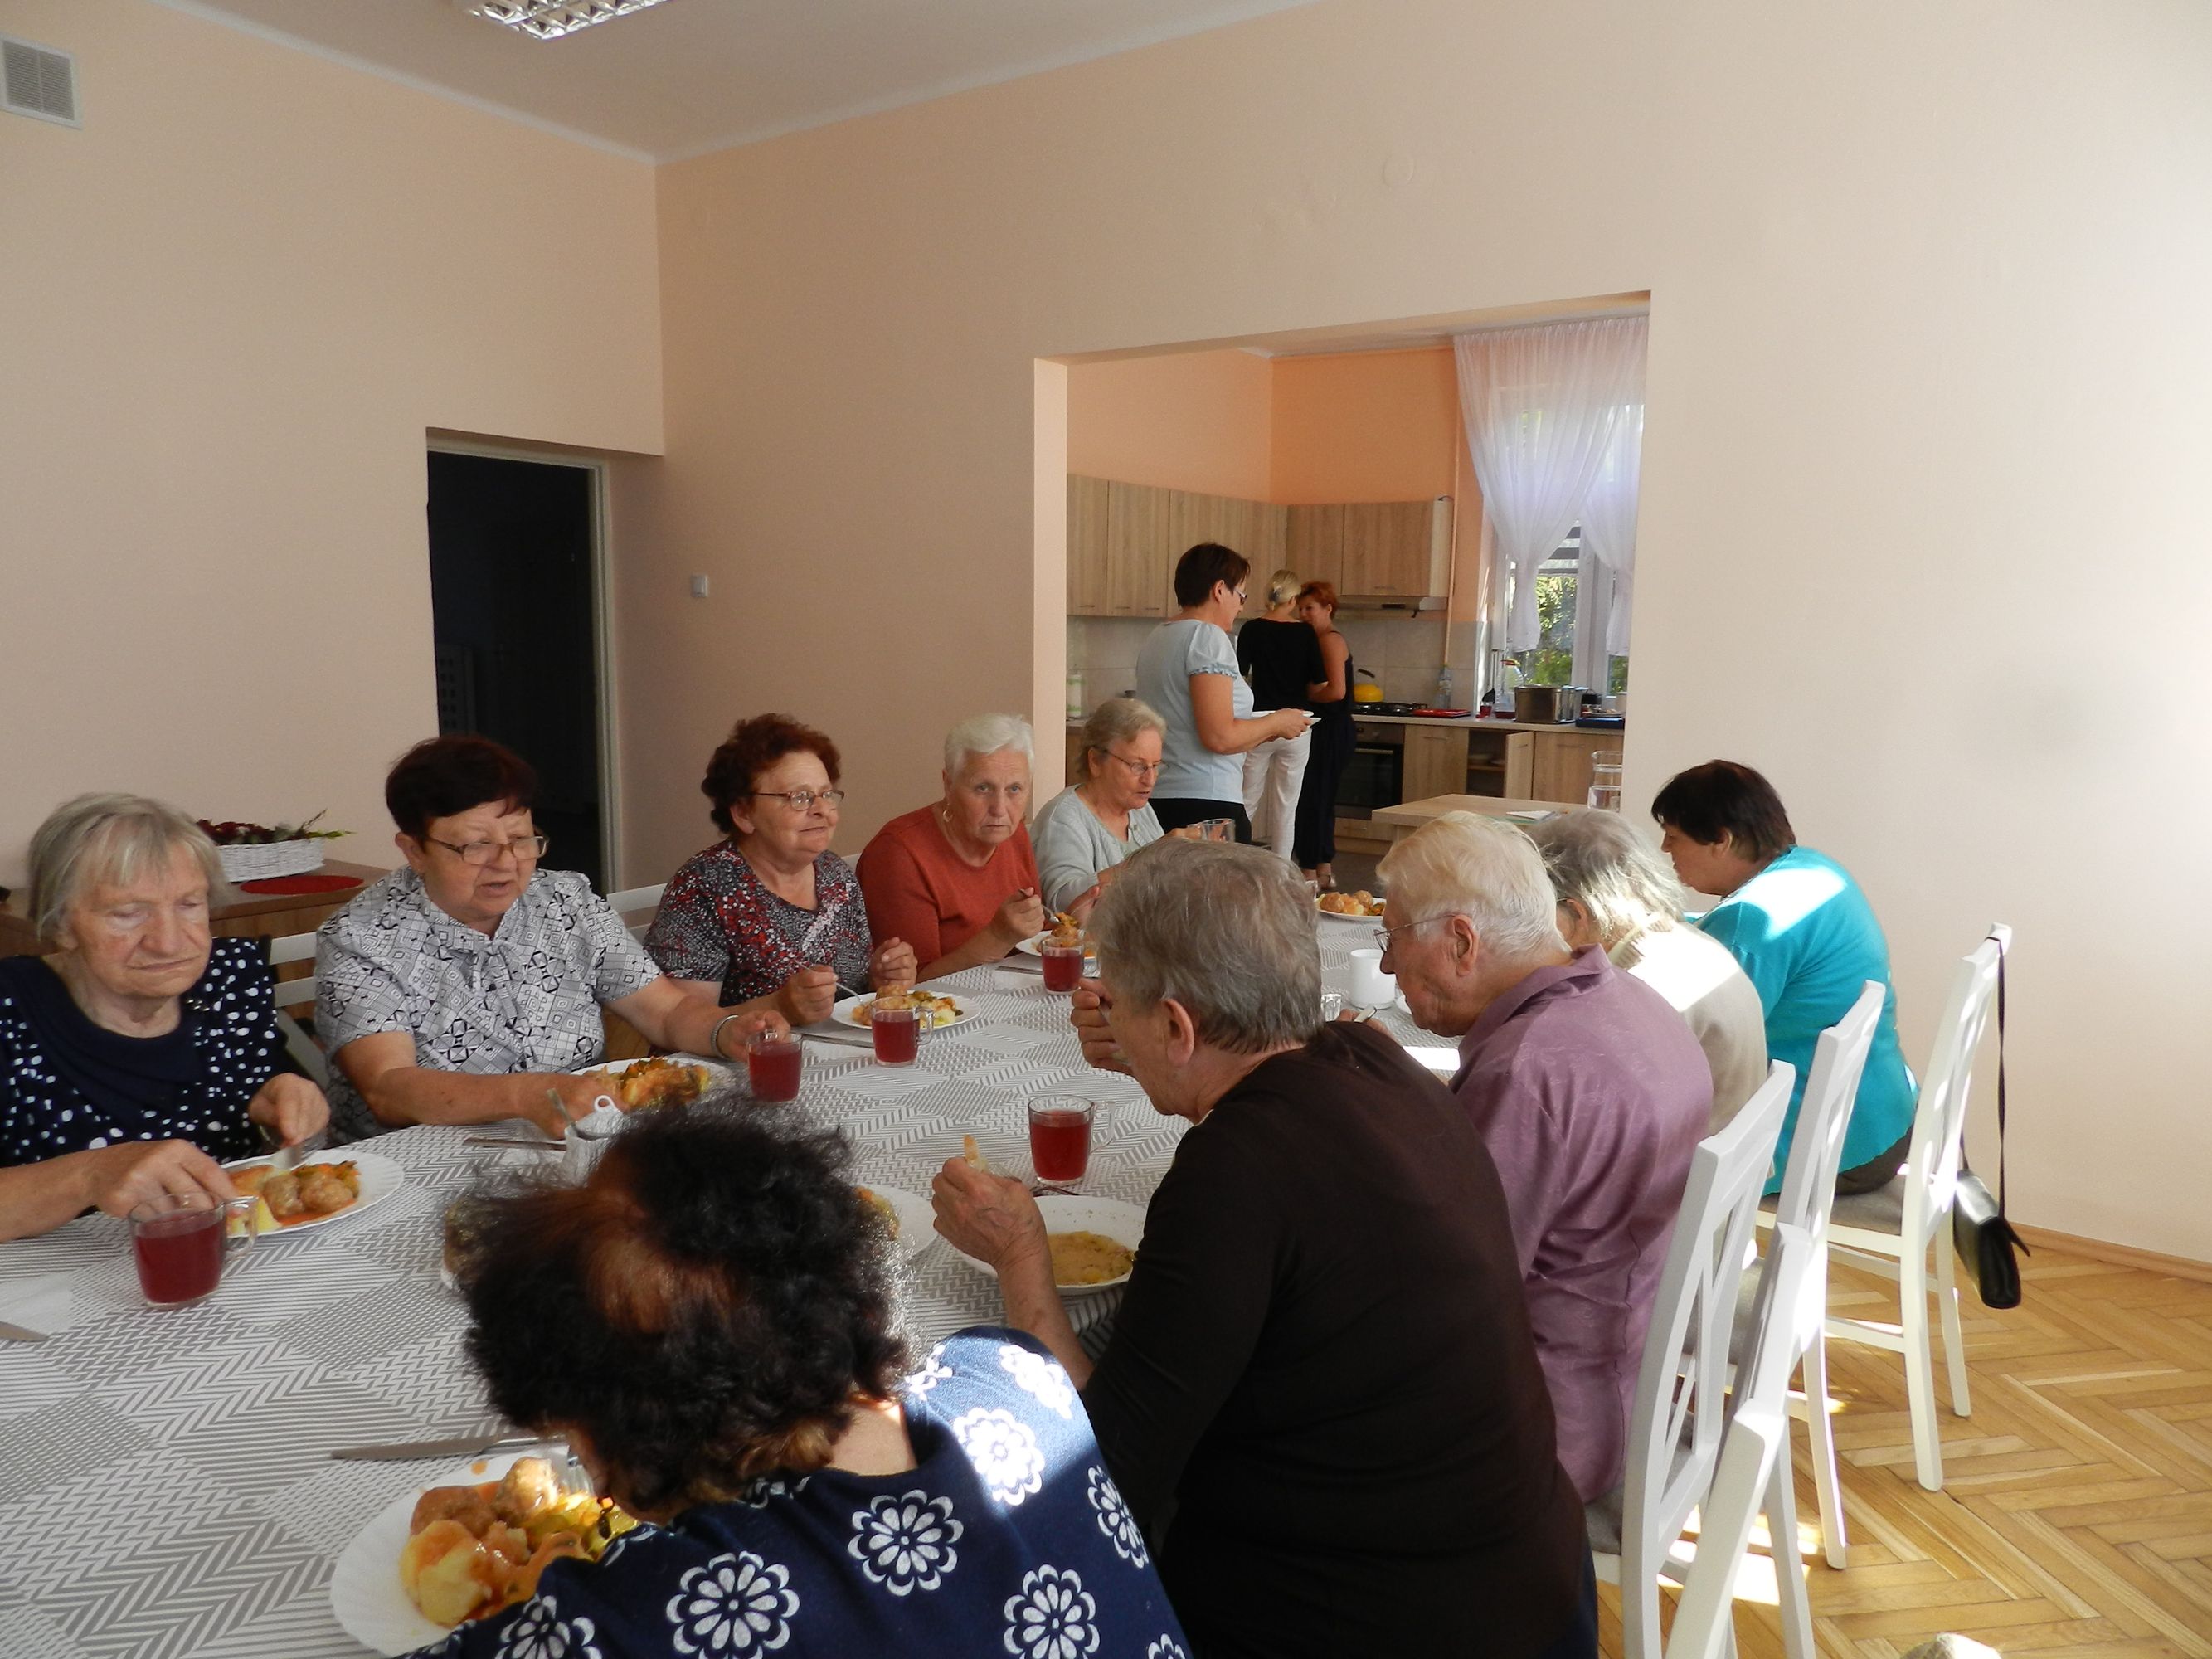 Uczestnicy Dziennego Domu Pomocy podczas obiadu w godzinach pracy Domu, 10 osób przy stole